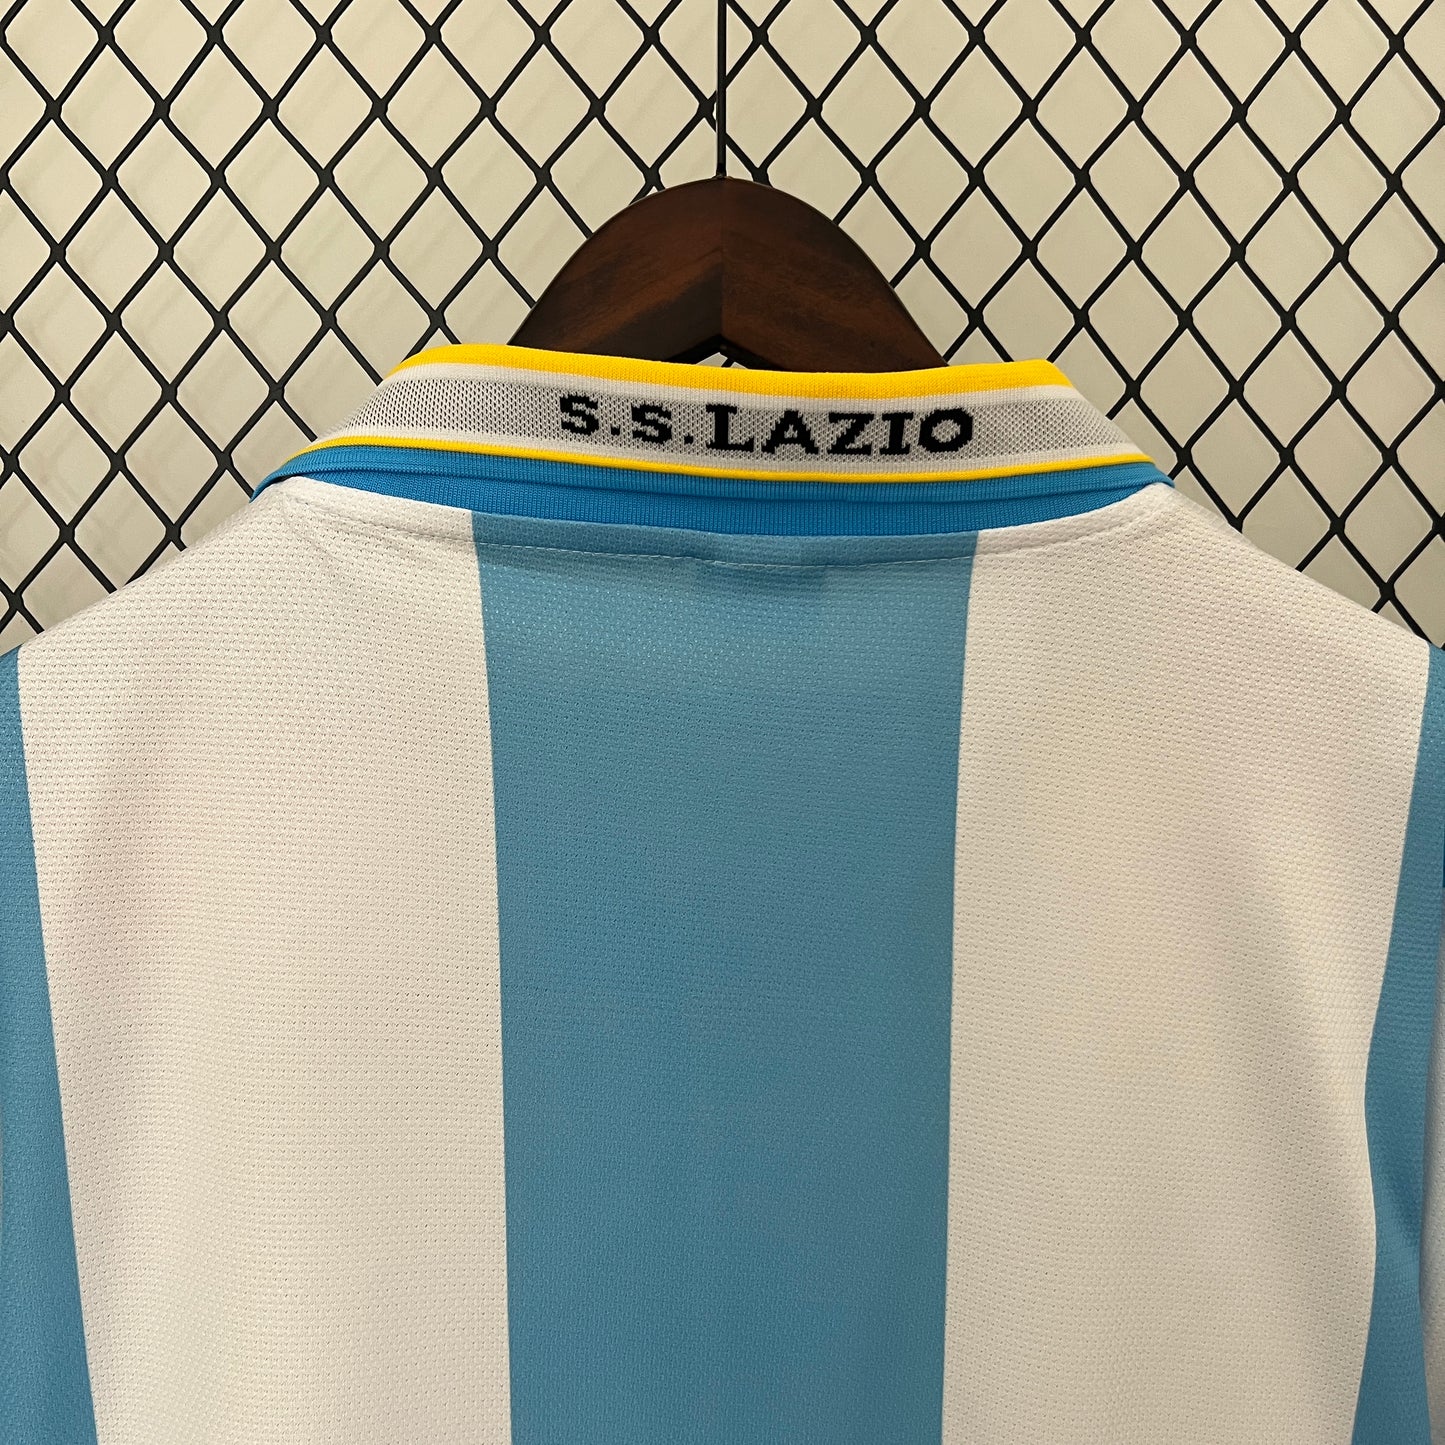 Retro Lazio 99/00 Home Kit